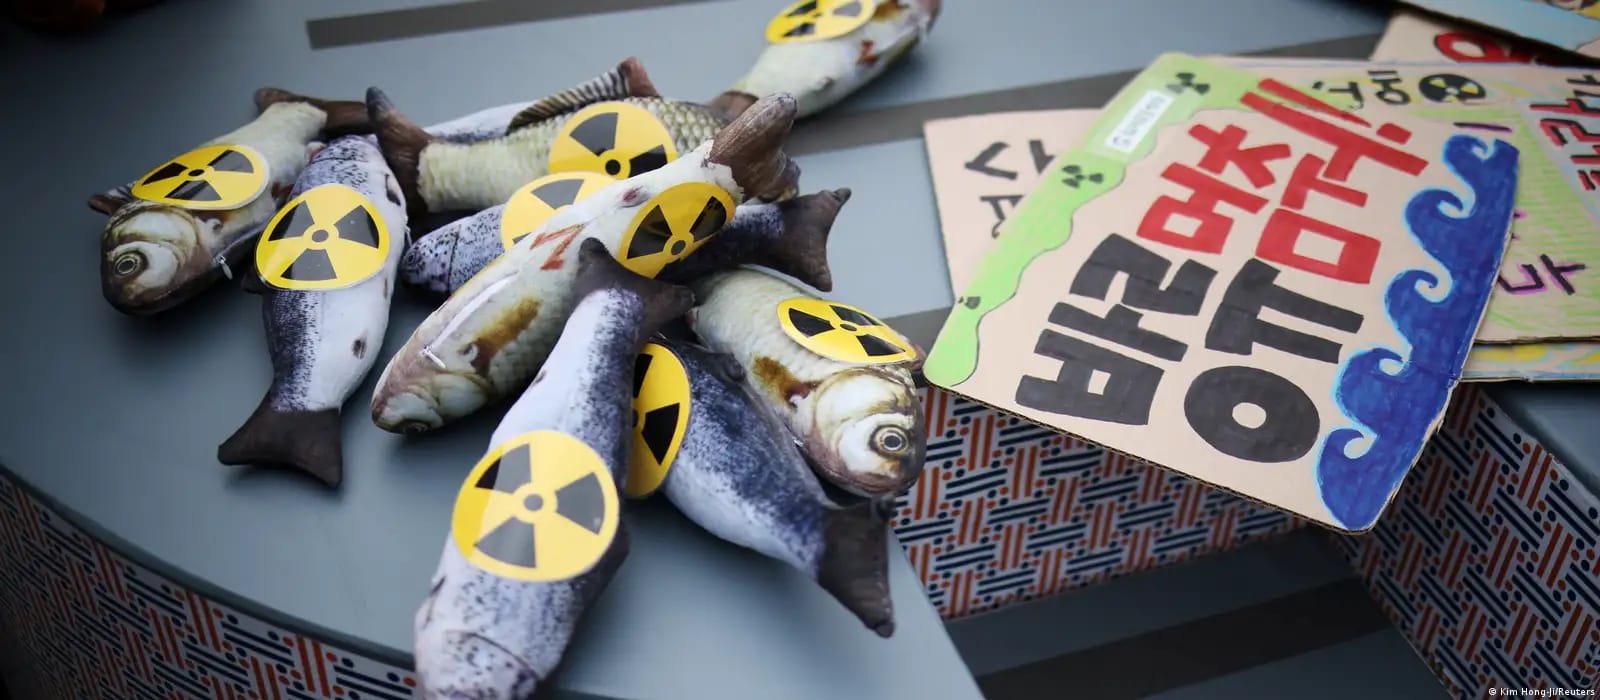 Jepang Buang Limbah Radioaktif Fukushima ke Laut, Pakar Nuklir Sebut Bisa Memicu Kanker